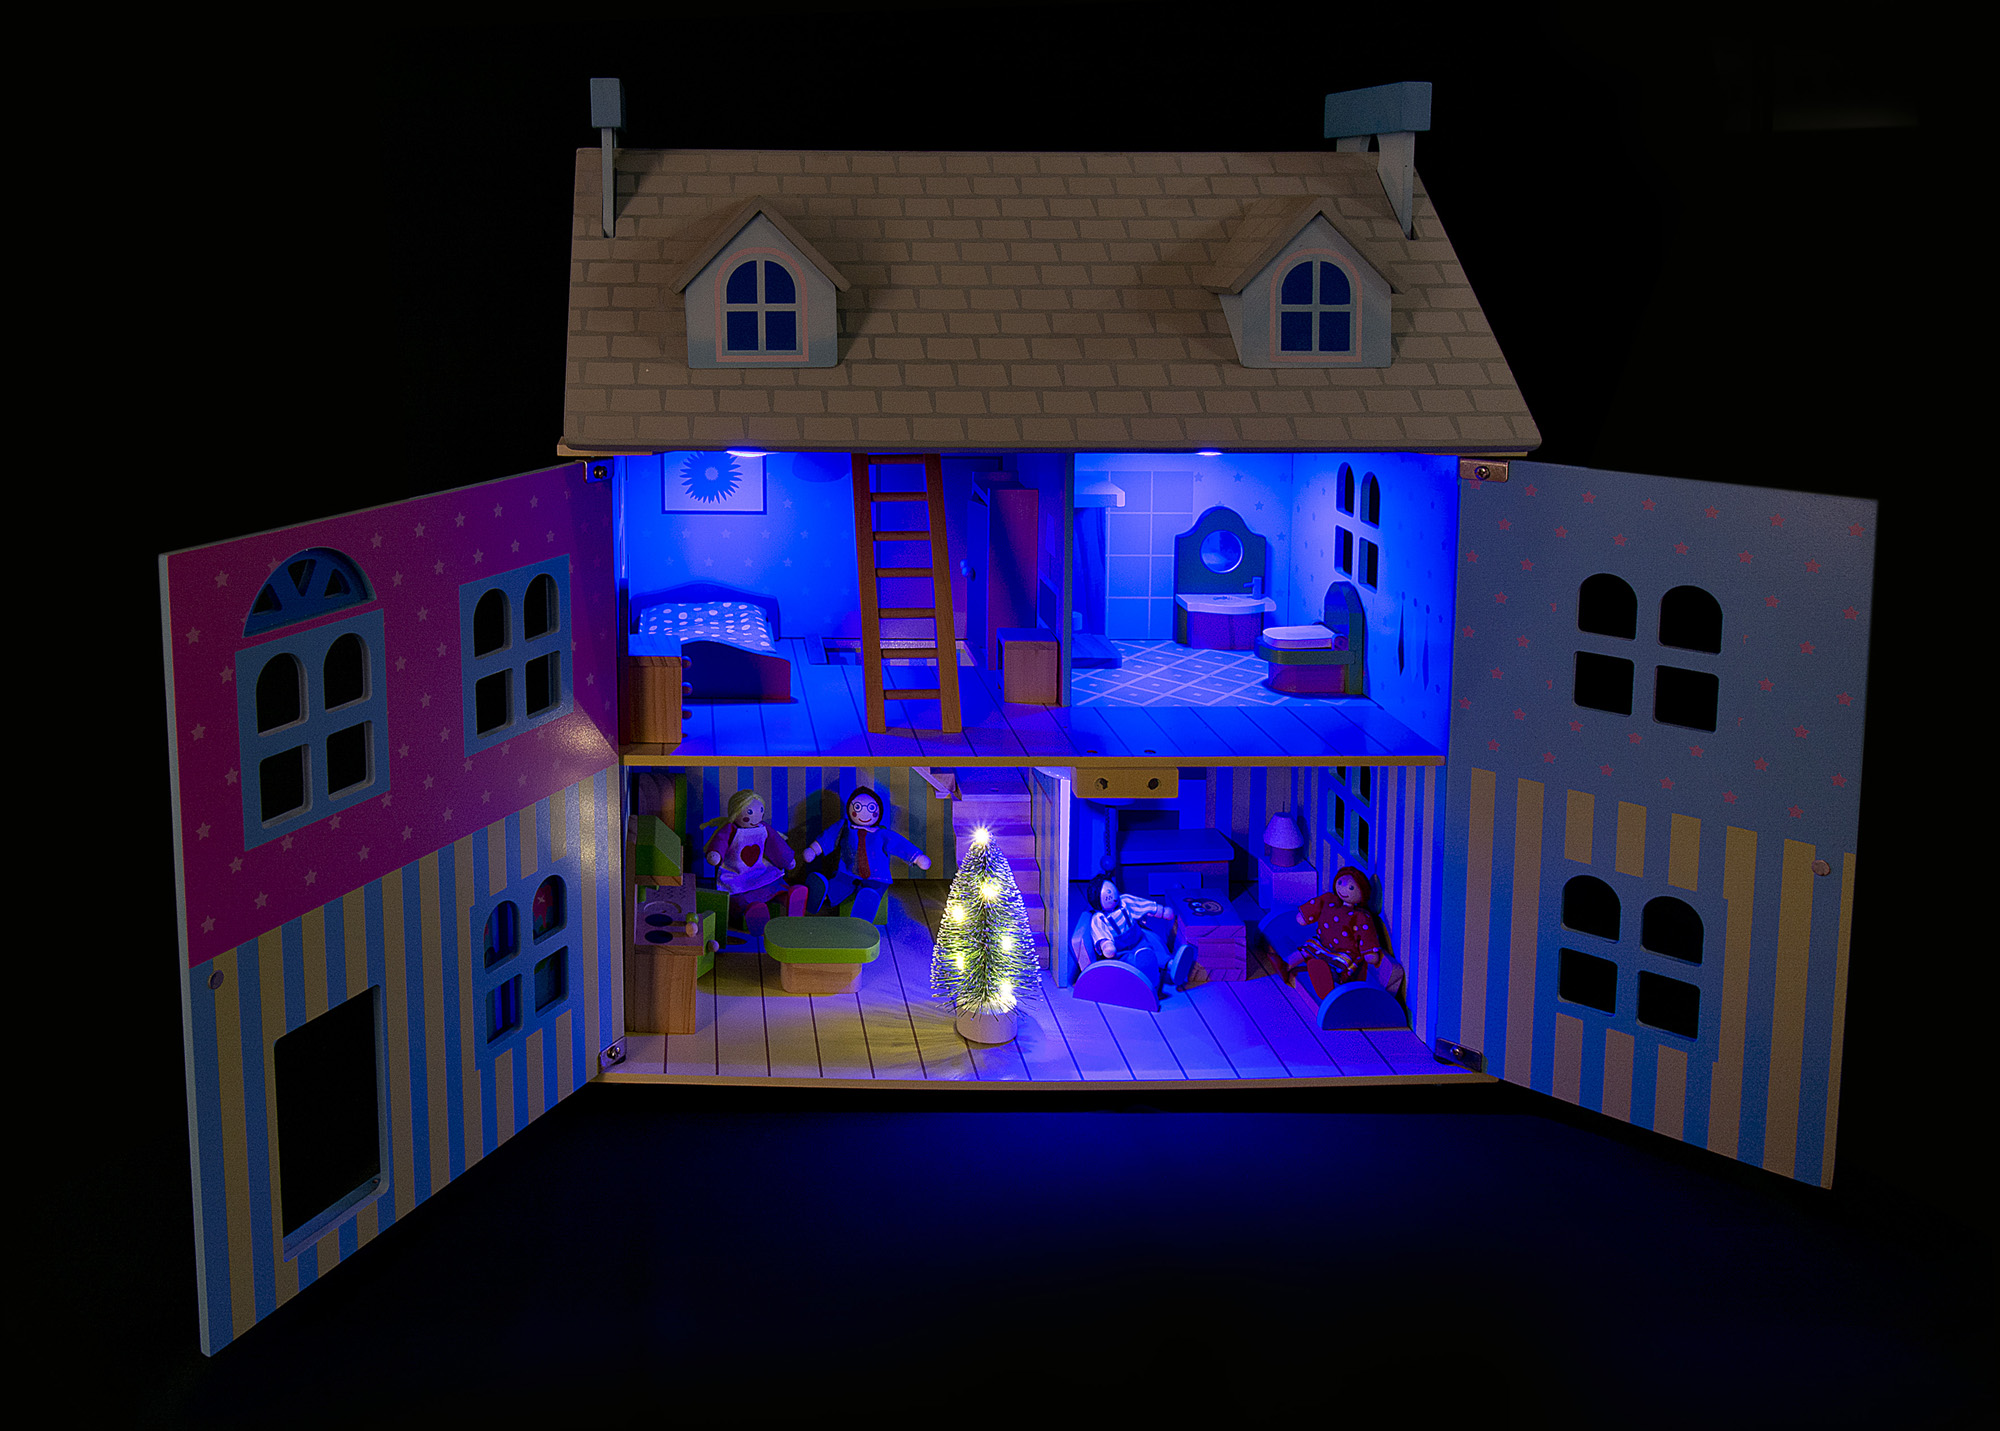 Schönes Puppenhaus aus Holz mit RGB-LED-Beleuchtung + 2 Puppen